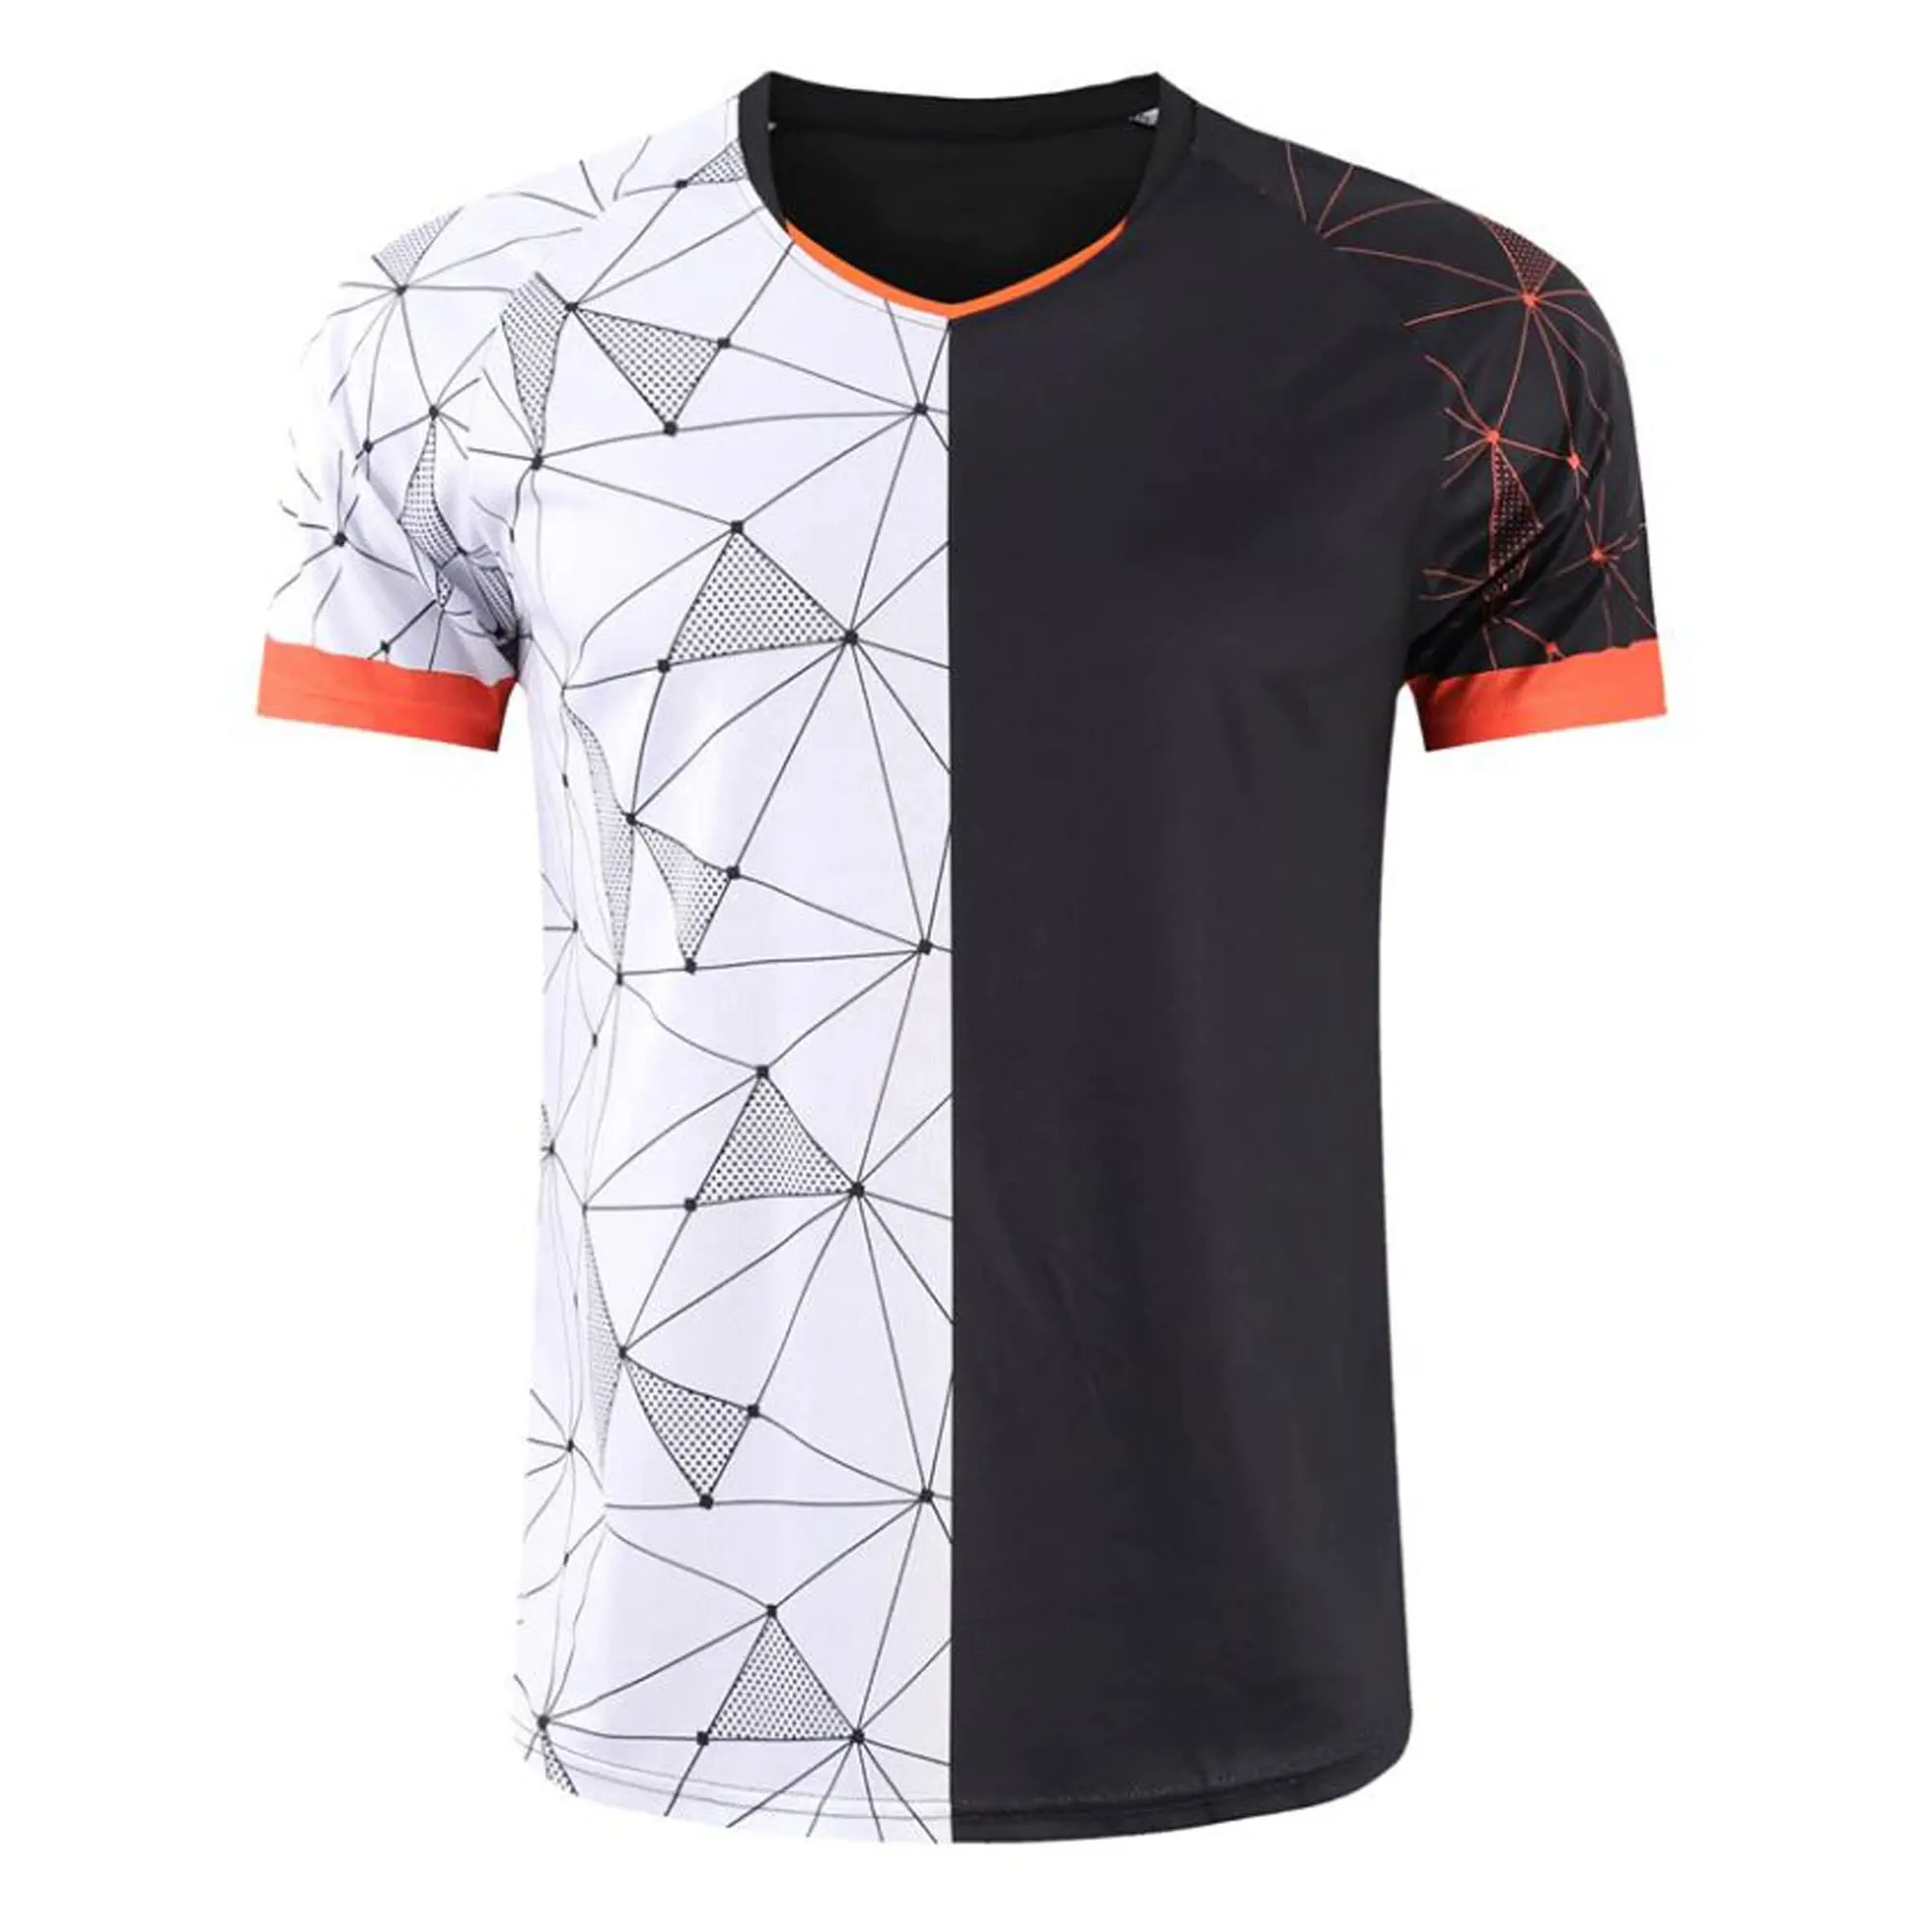 Camiseta de manga corta para equipo de fútbol, camiseta de entrenamiento de fútbol sublimada